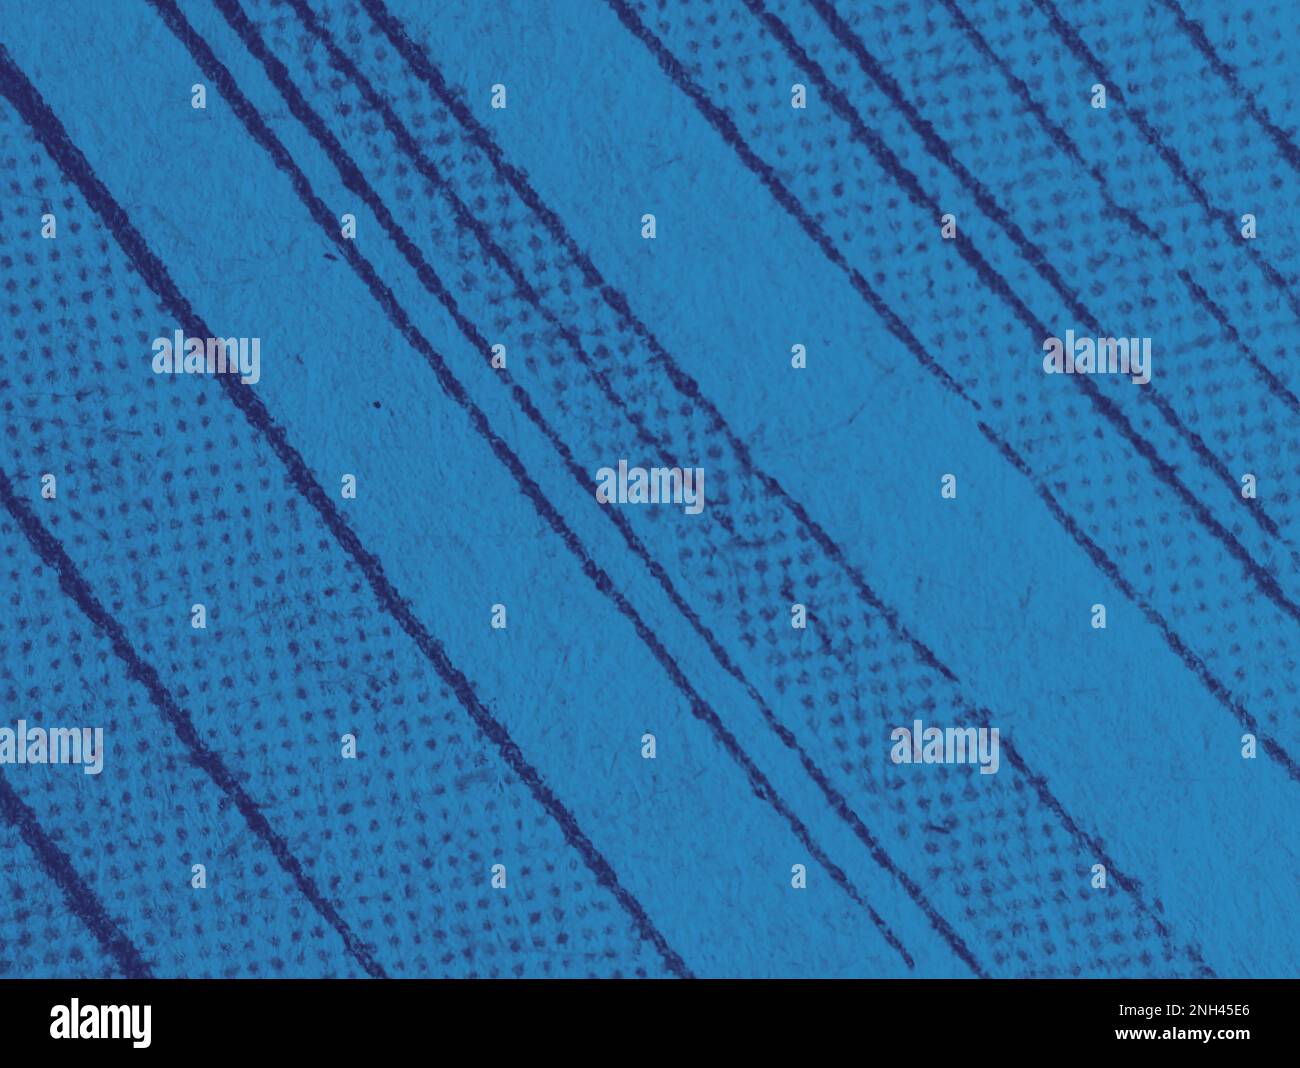 Vue macro du motif d'impression par points sur une ancienne page de bande dessinée avec un effet bleu abstrait monochrome Banque D'Images